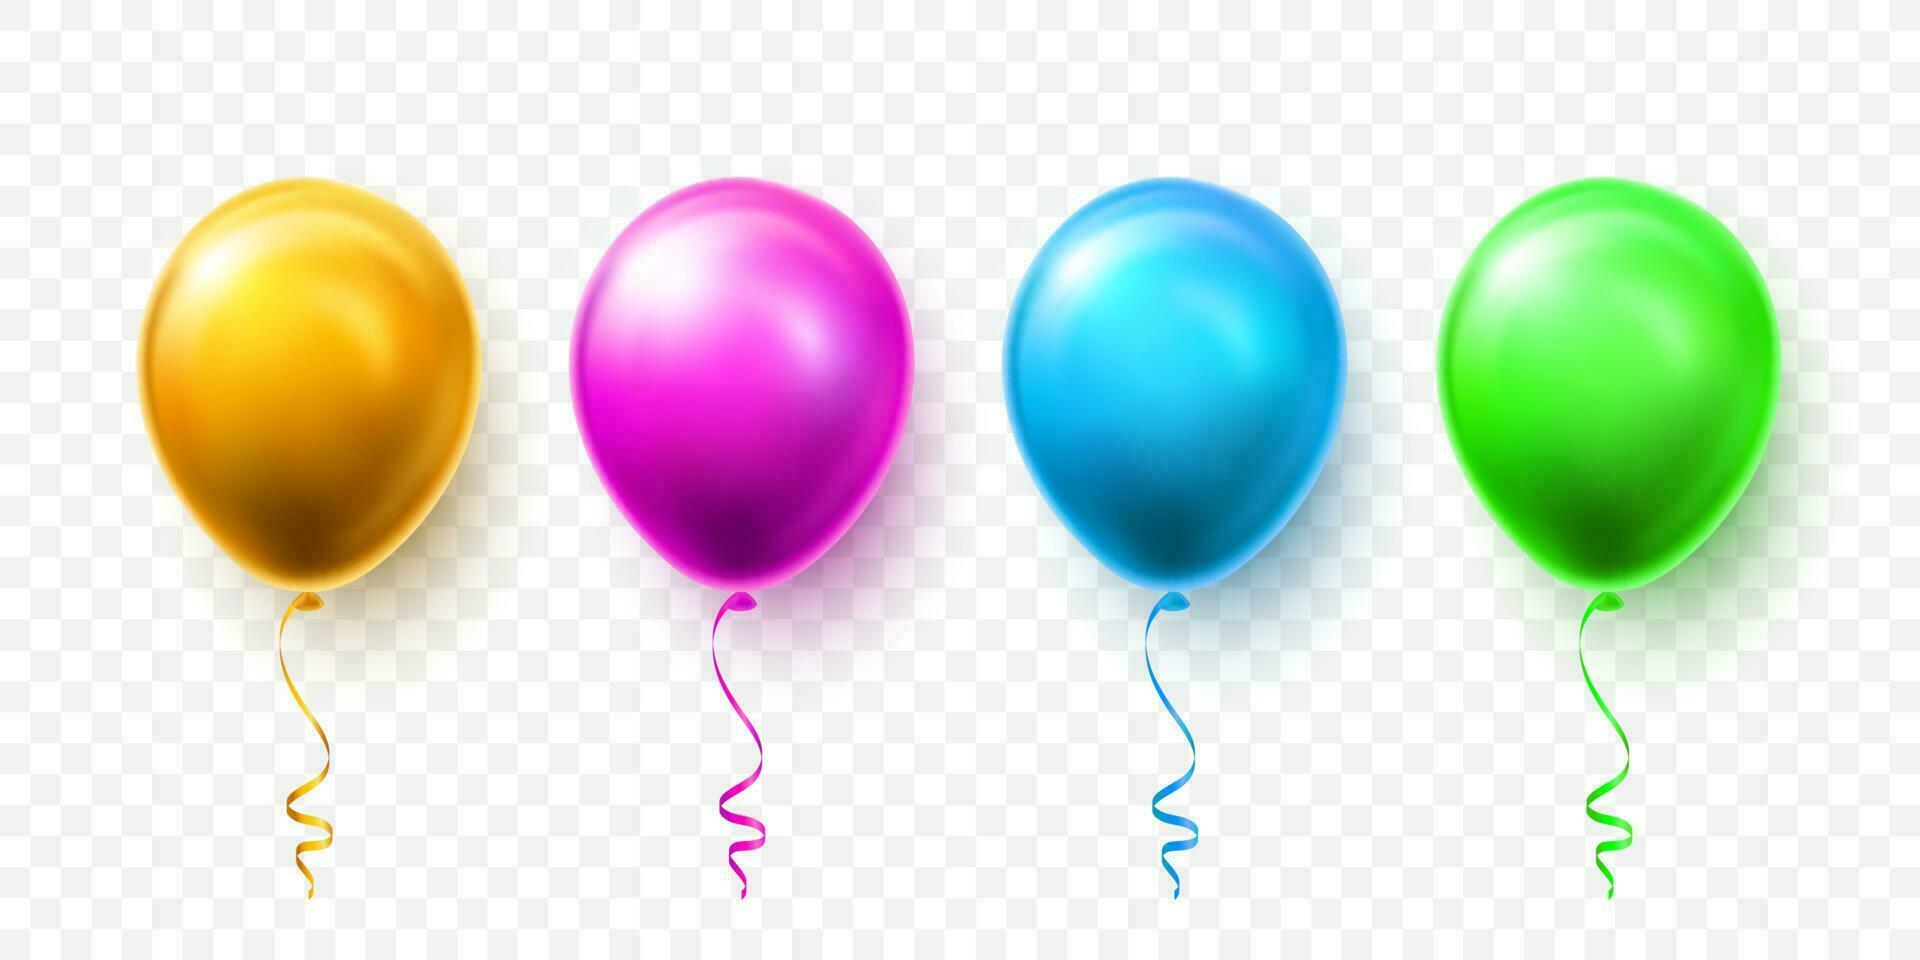 réaliste bleu, vert, rose et or des ballons avec ombre. éclat hélium ballon pour mariage, anniversaire, des soirées. Festival décoration. vecteur illustration